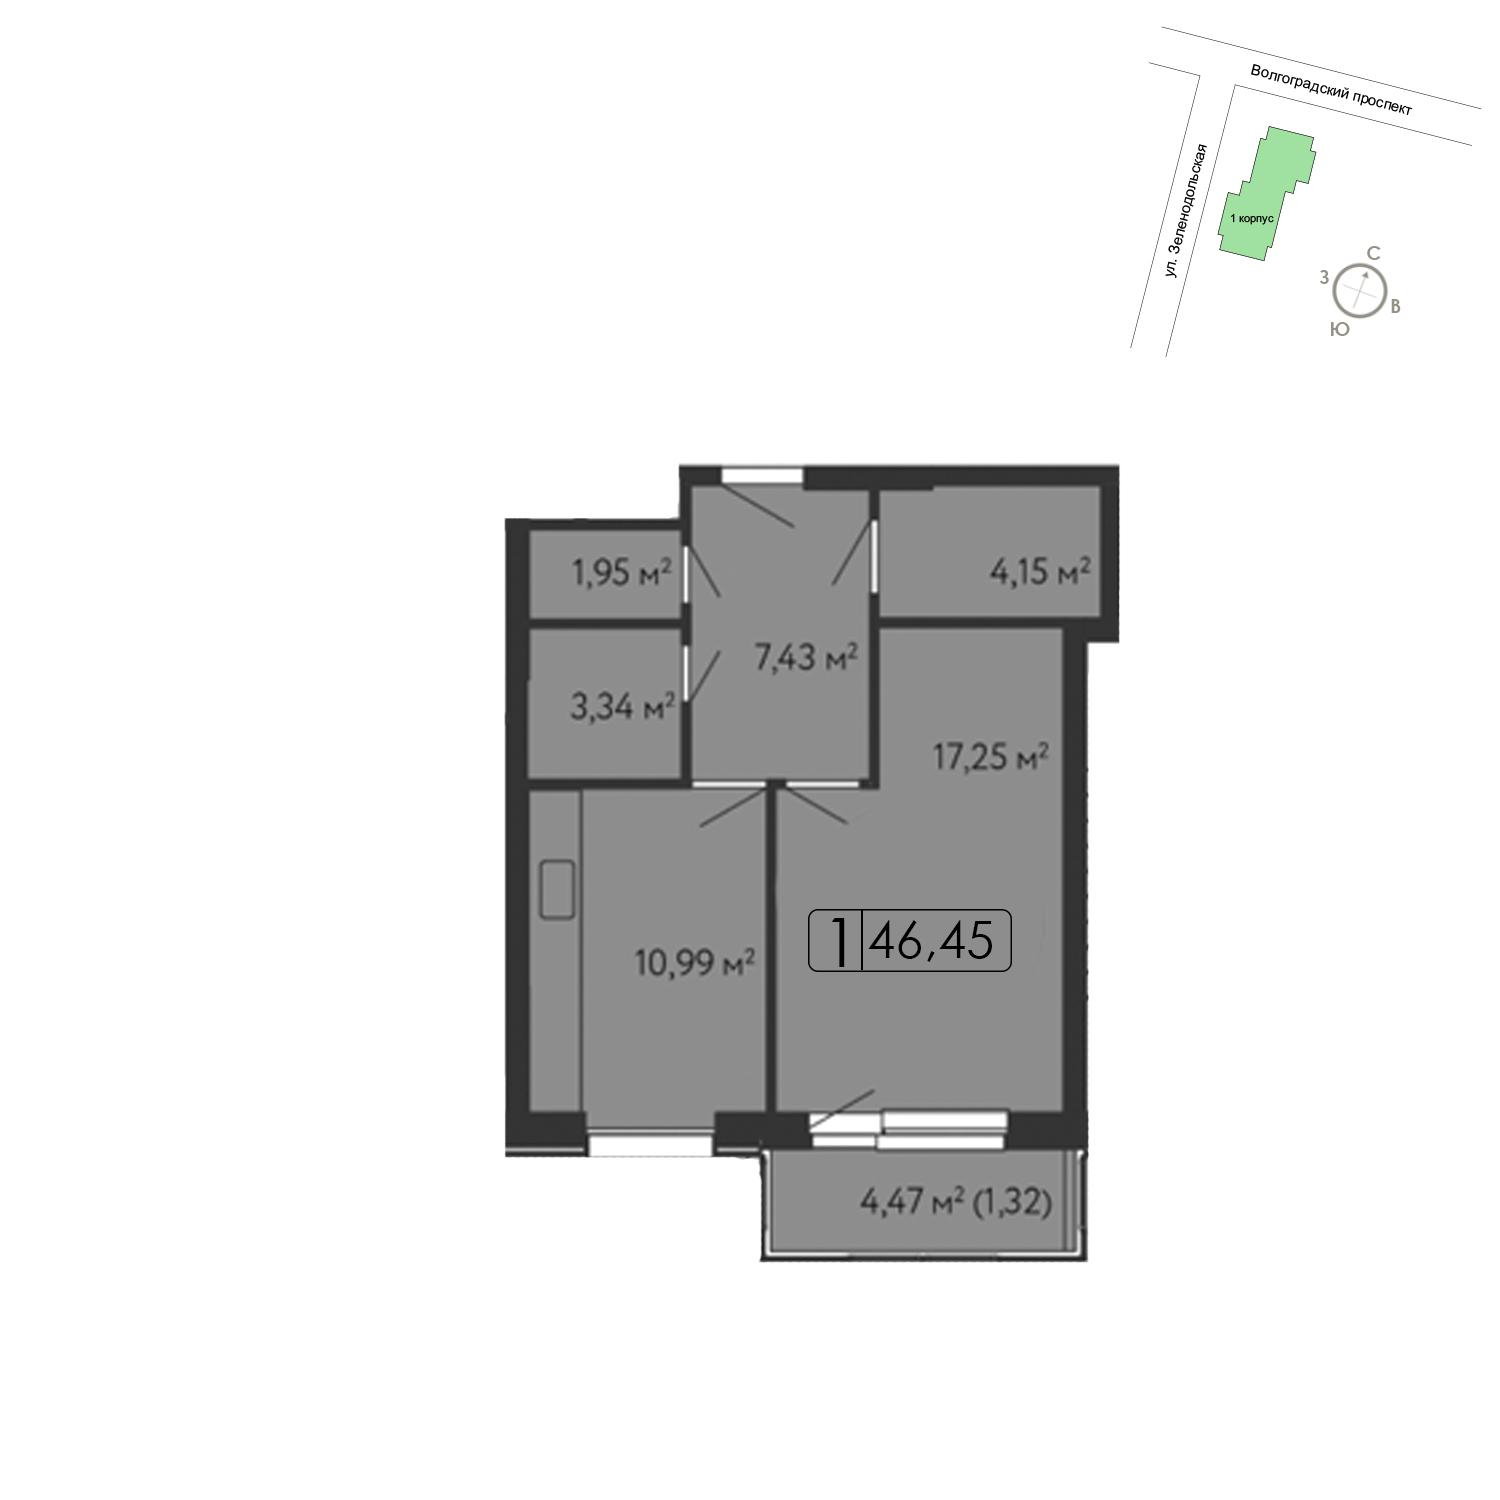 Продаётся 1-комнатная квартира в новостройке 47.6 кв.м. этаж 15/15 за 10 800 660 руб 